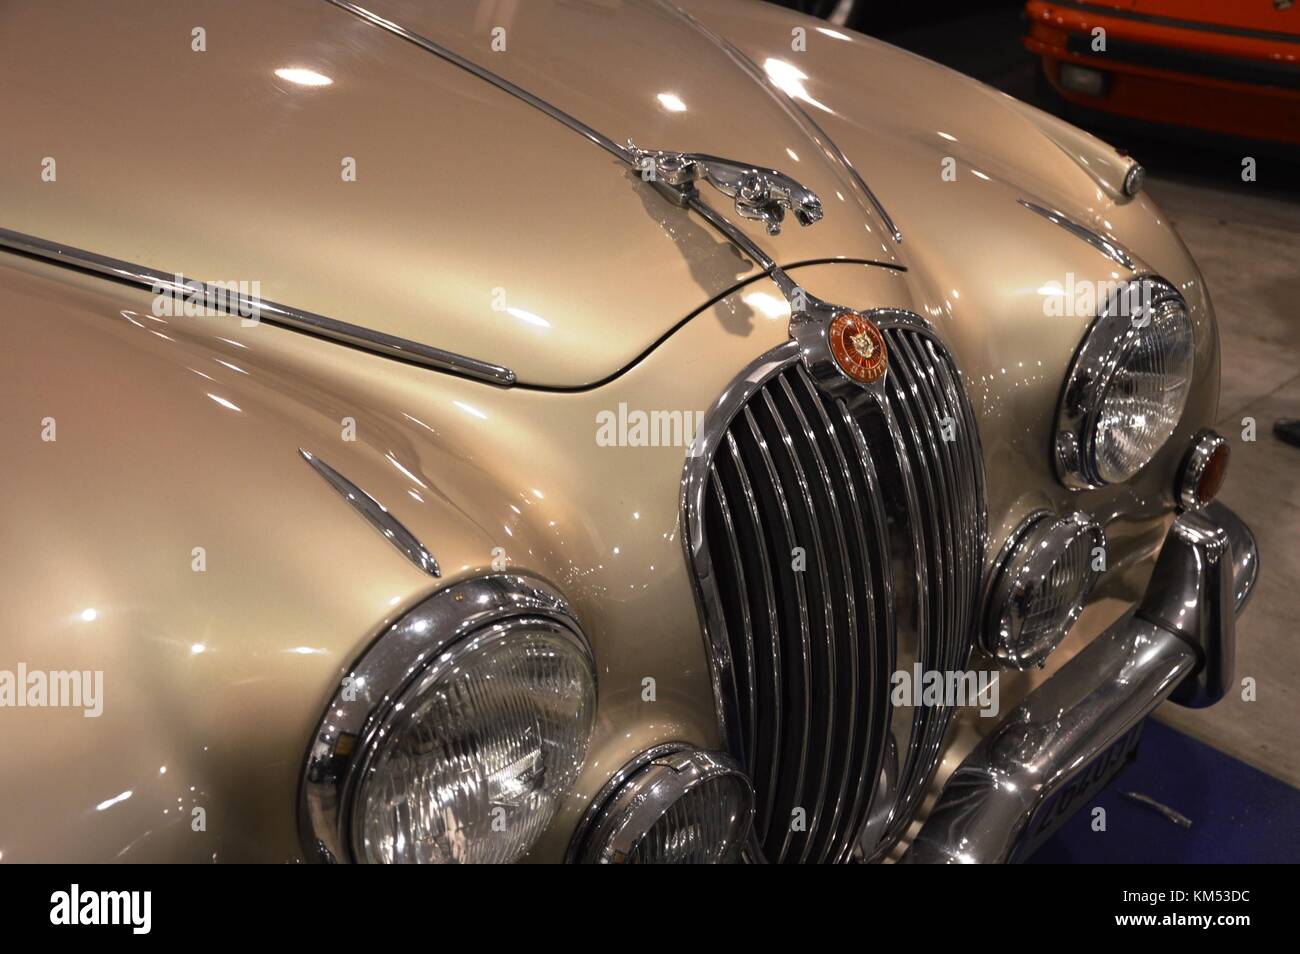 Jaguar d-type, 1954, Jaguar Mk 2, 1959, Jaguar mk iv saloon, 1946,voiture ancienne à Padoue, Italie - 25 oct 2015 Banque D'Images